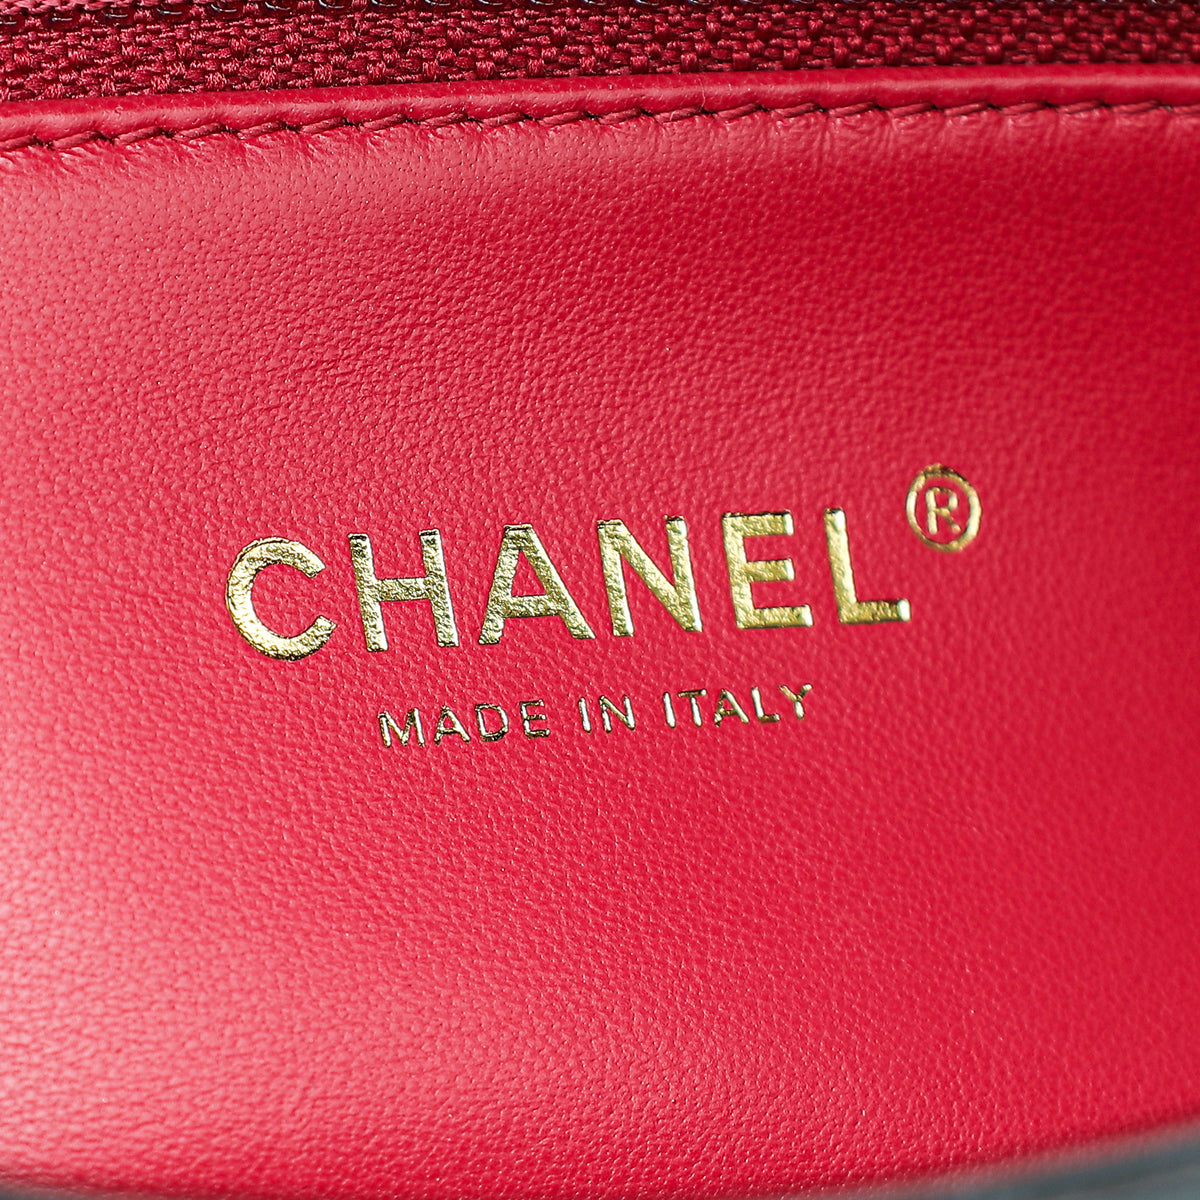 Chanel Black Pending CC Flap Bag